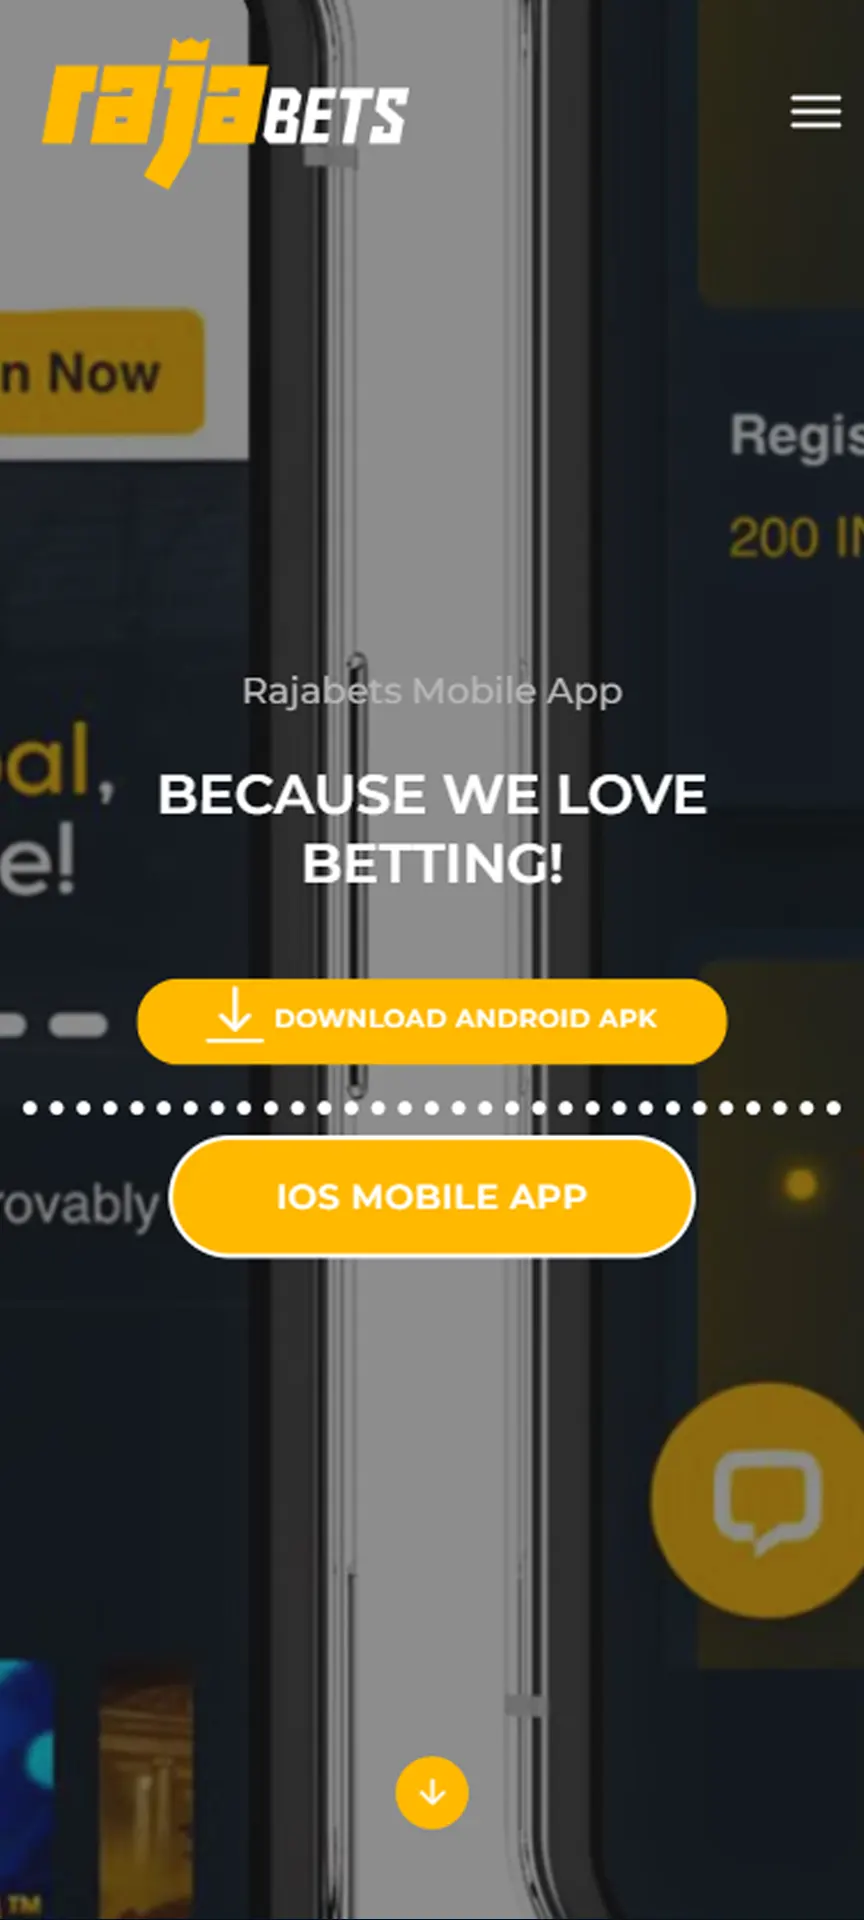 Start Rajabets iOS app downloading procedure.